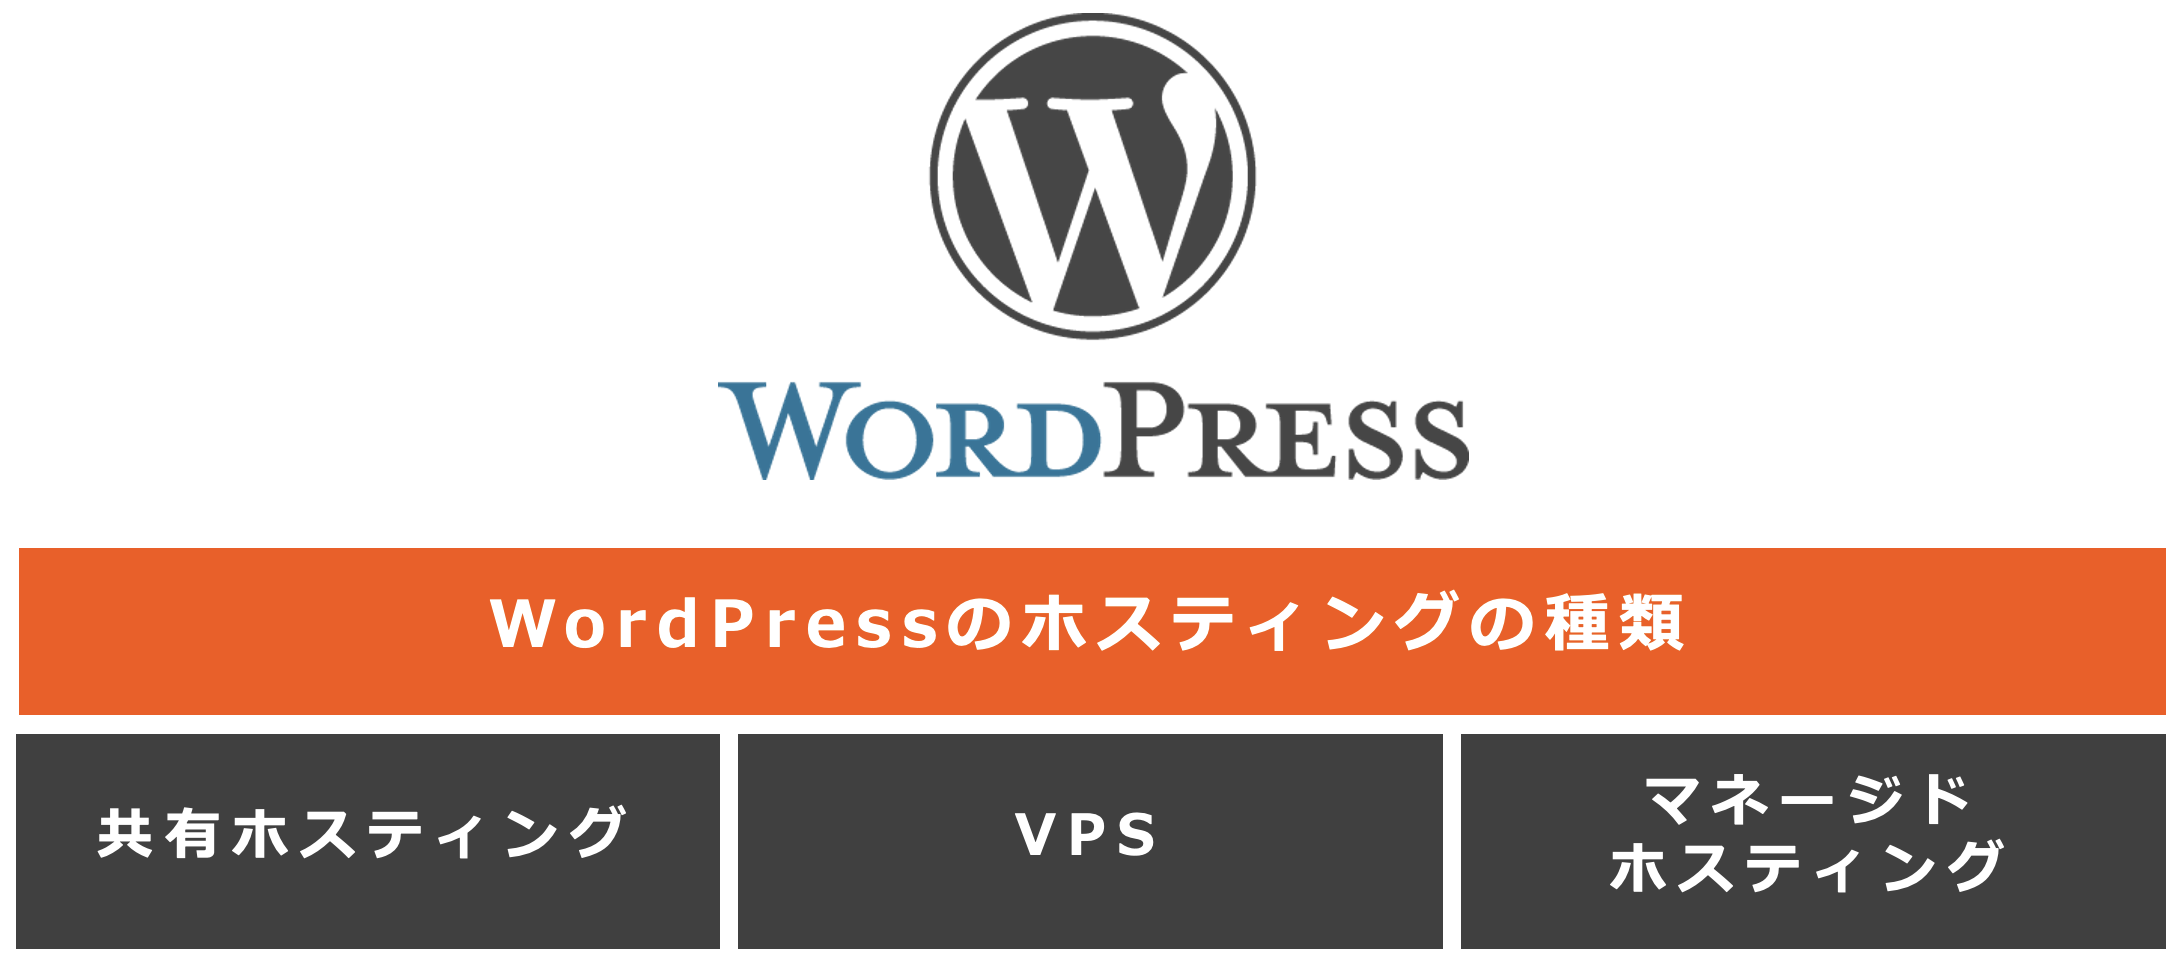 WordPressのホスティングの種類